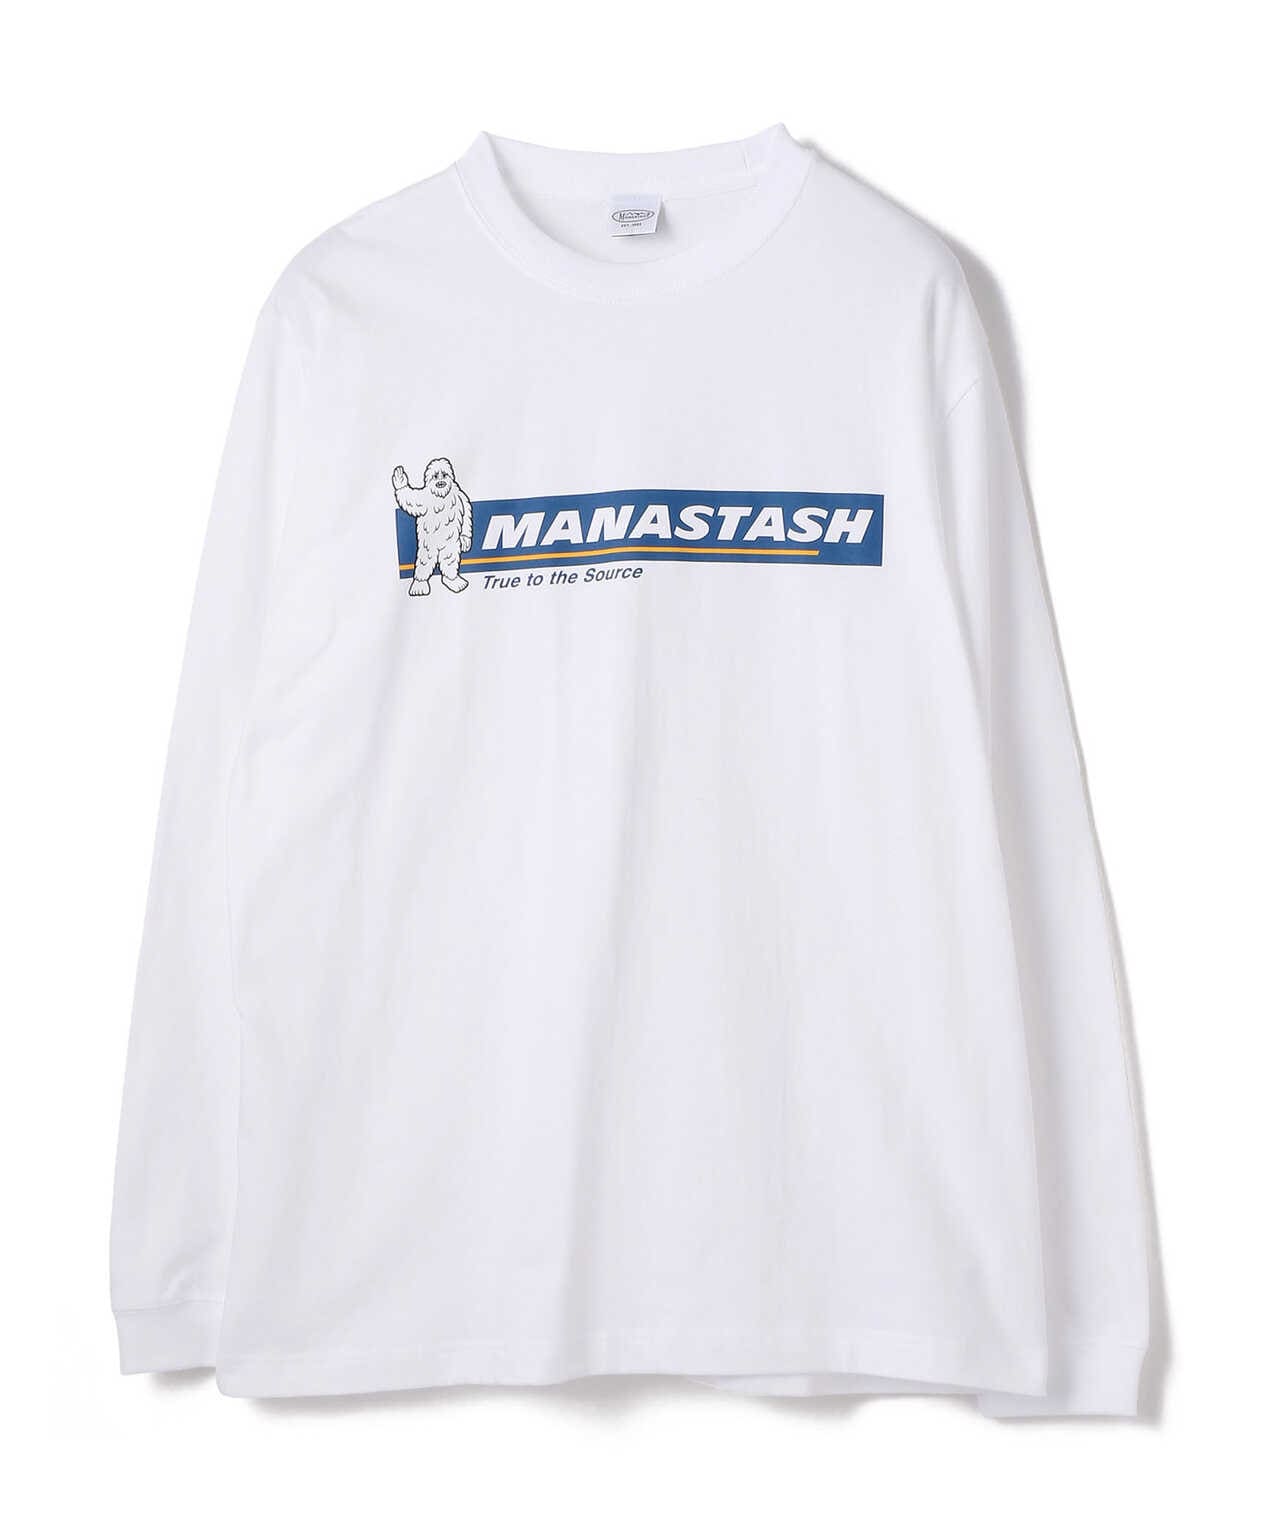 MANASTASH/マナスタッシュ/YETI L/S T-Shirts/グラフィックプリントロングスリーブTシャツ